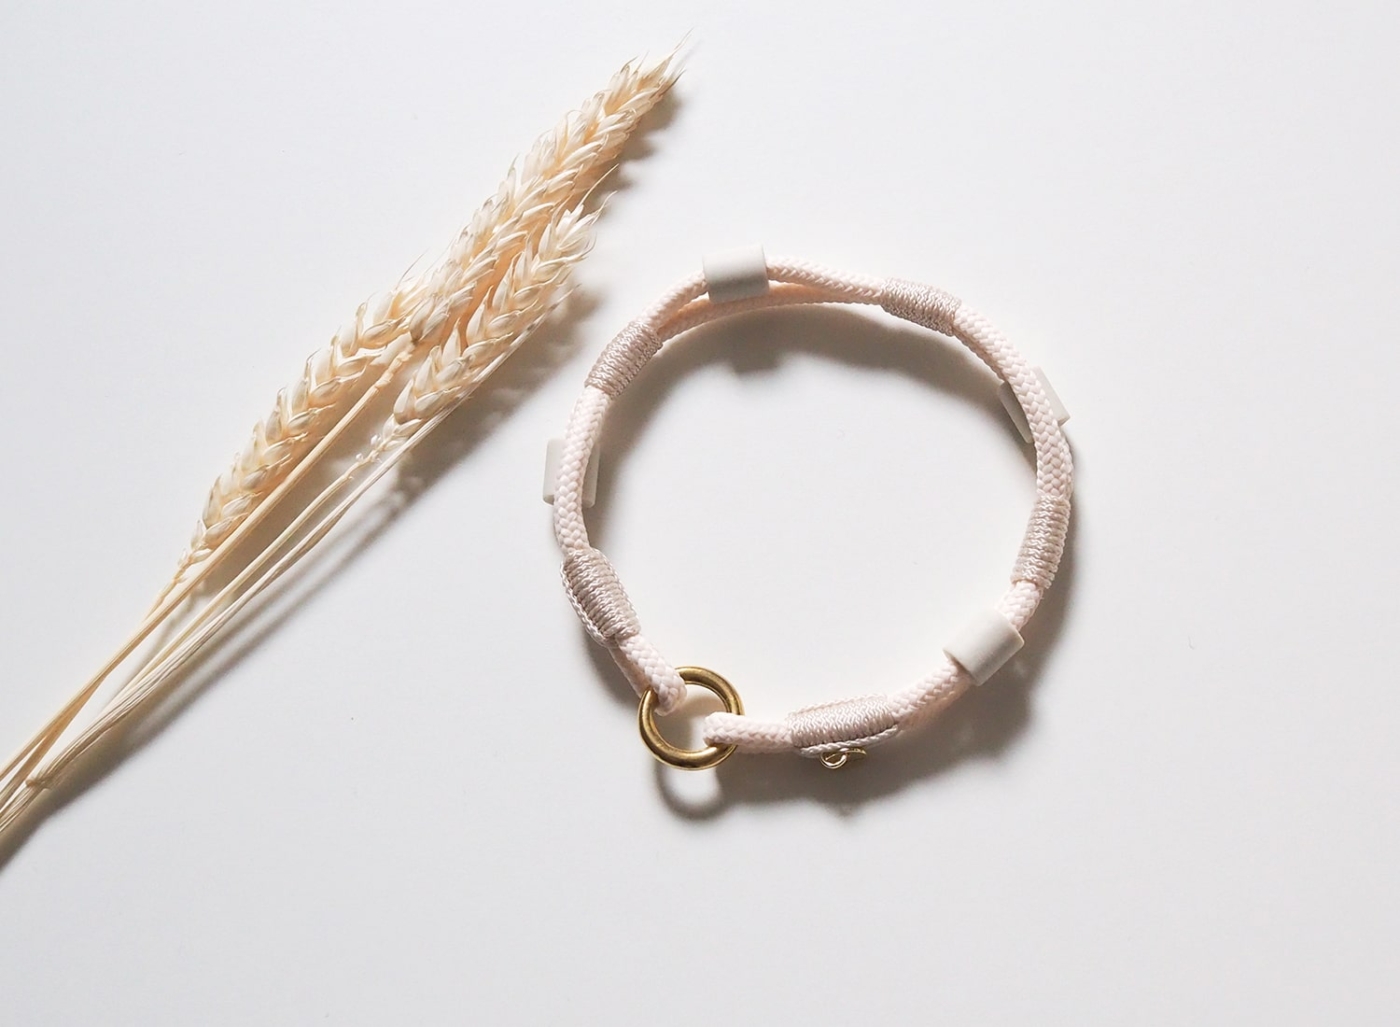 Antizeckenhalsband/EM-Keramik Halsband aus Tau in Creme mit goldenen Details.